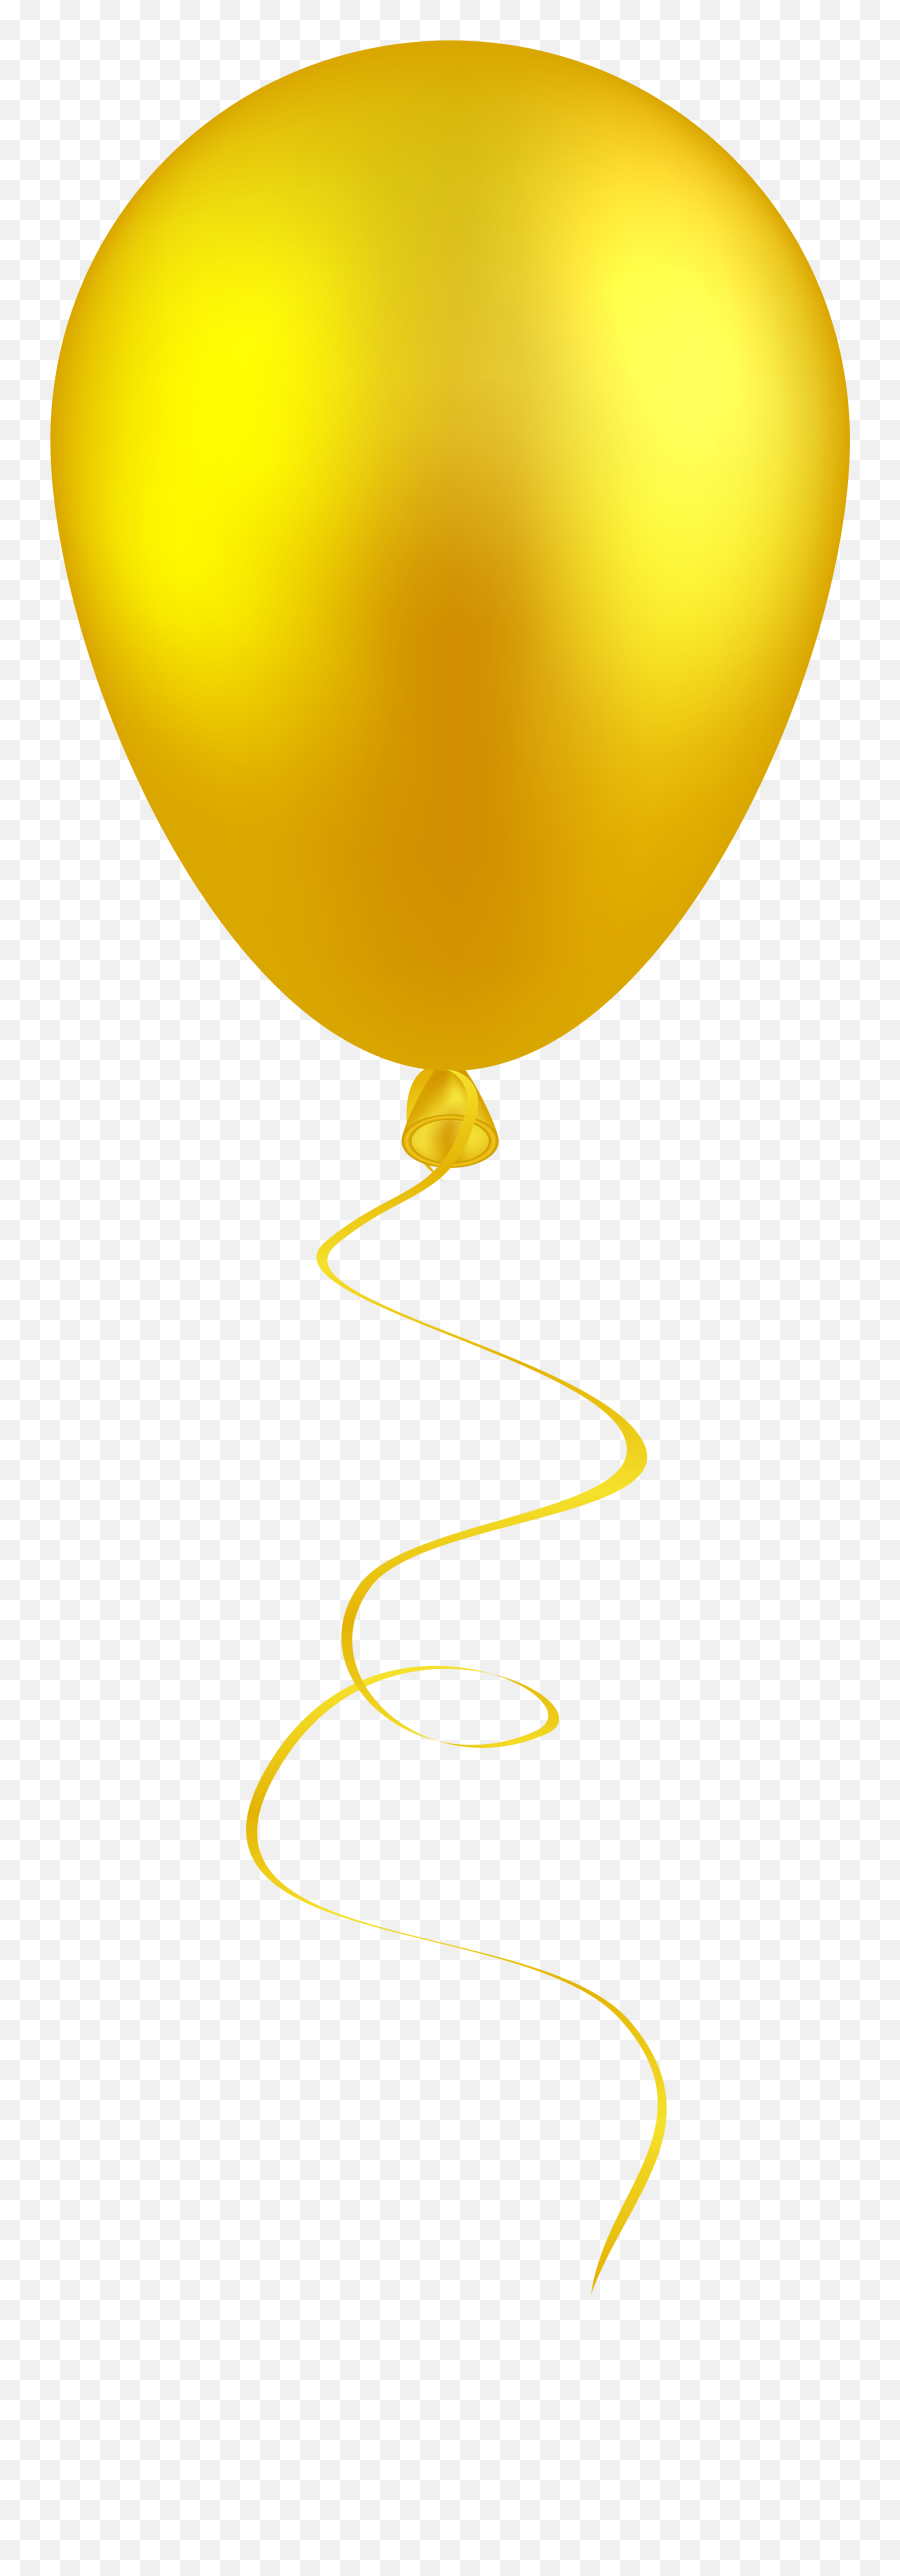 Faces Clipart Balloon Faces Balloon - Yellow Balloon Transparent Background Emoji,Emojis Balloons